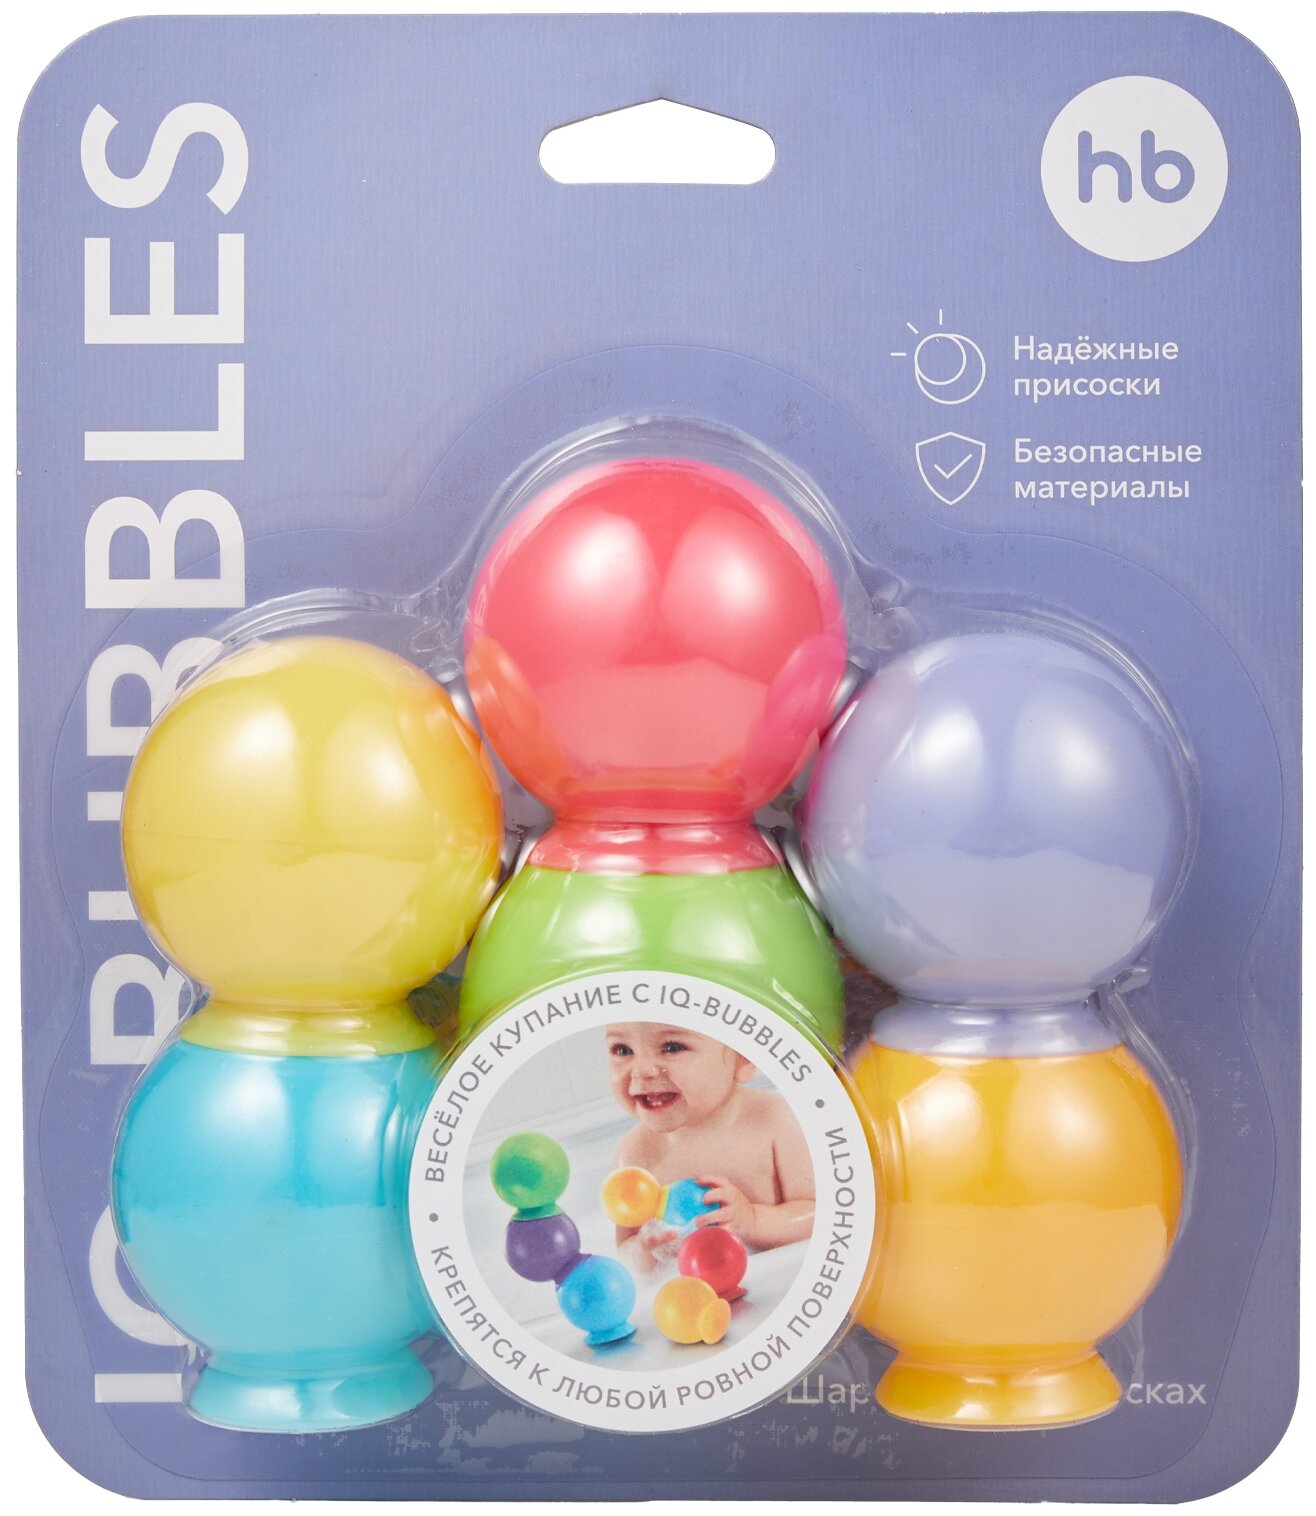 Набор игрушек для ванны Happy Baby, Iqbubbles 6 шт. - фото №11